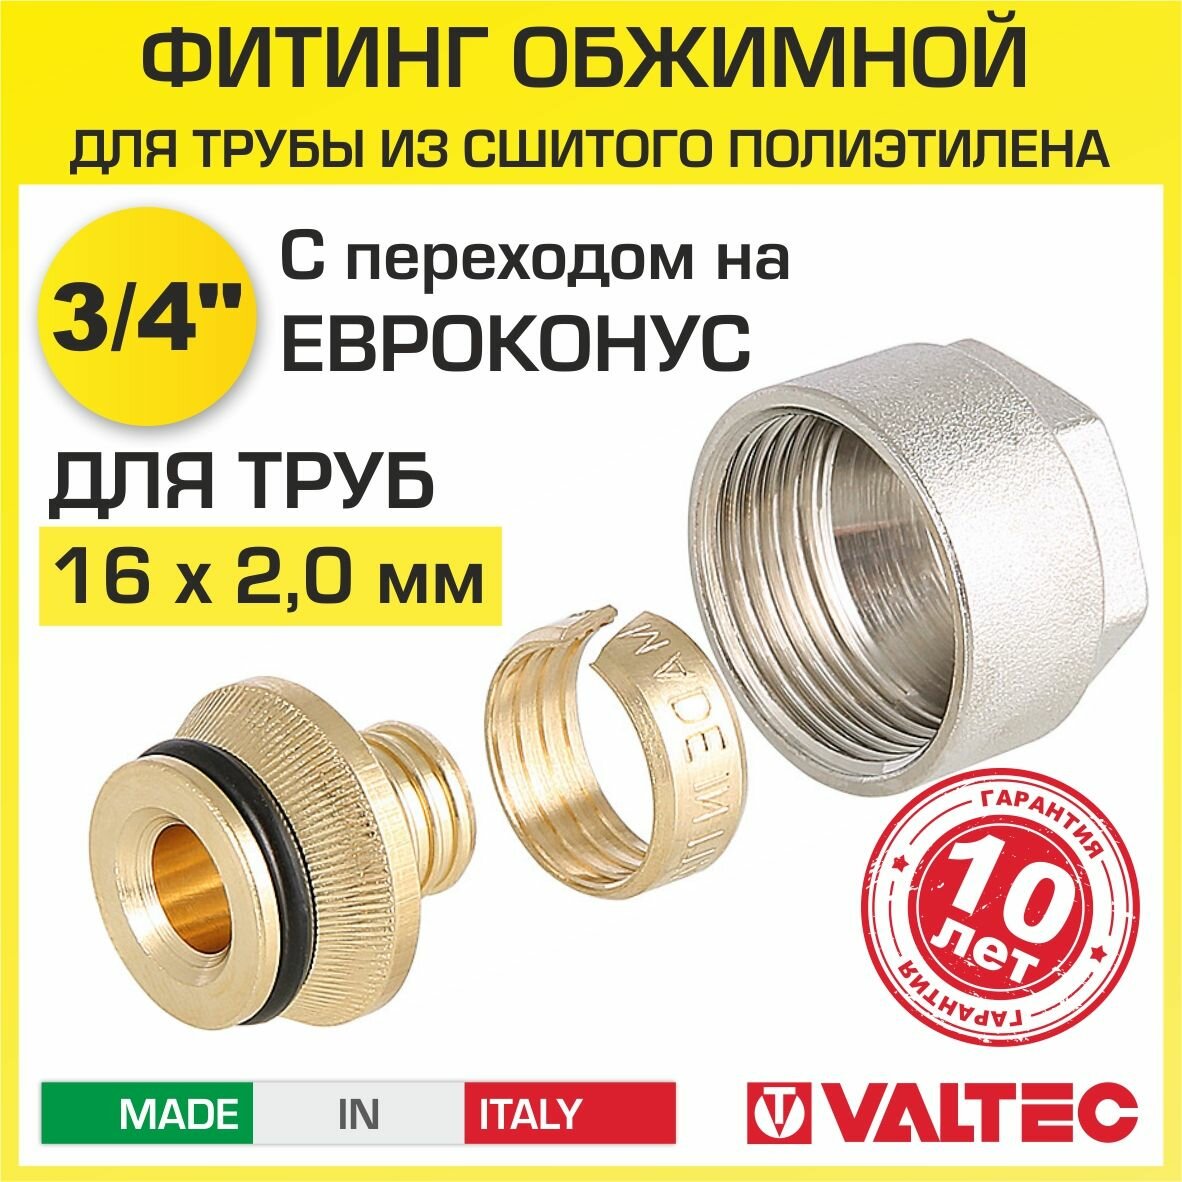 Евроконус Valtec VT.4410 для пластиковой трубы фитинг обжимной латунный 16 (2,0) 3/4" арт. VT.4410. NE.16